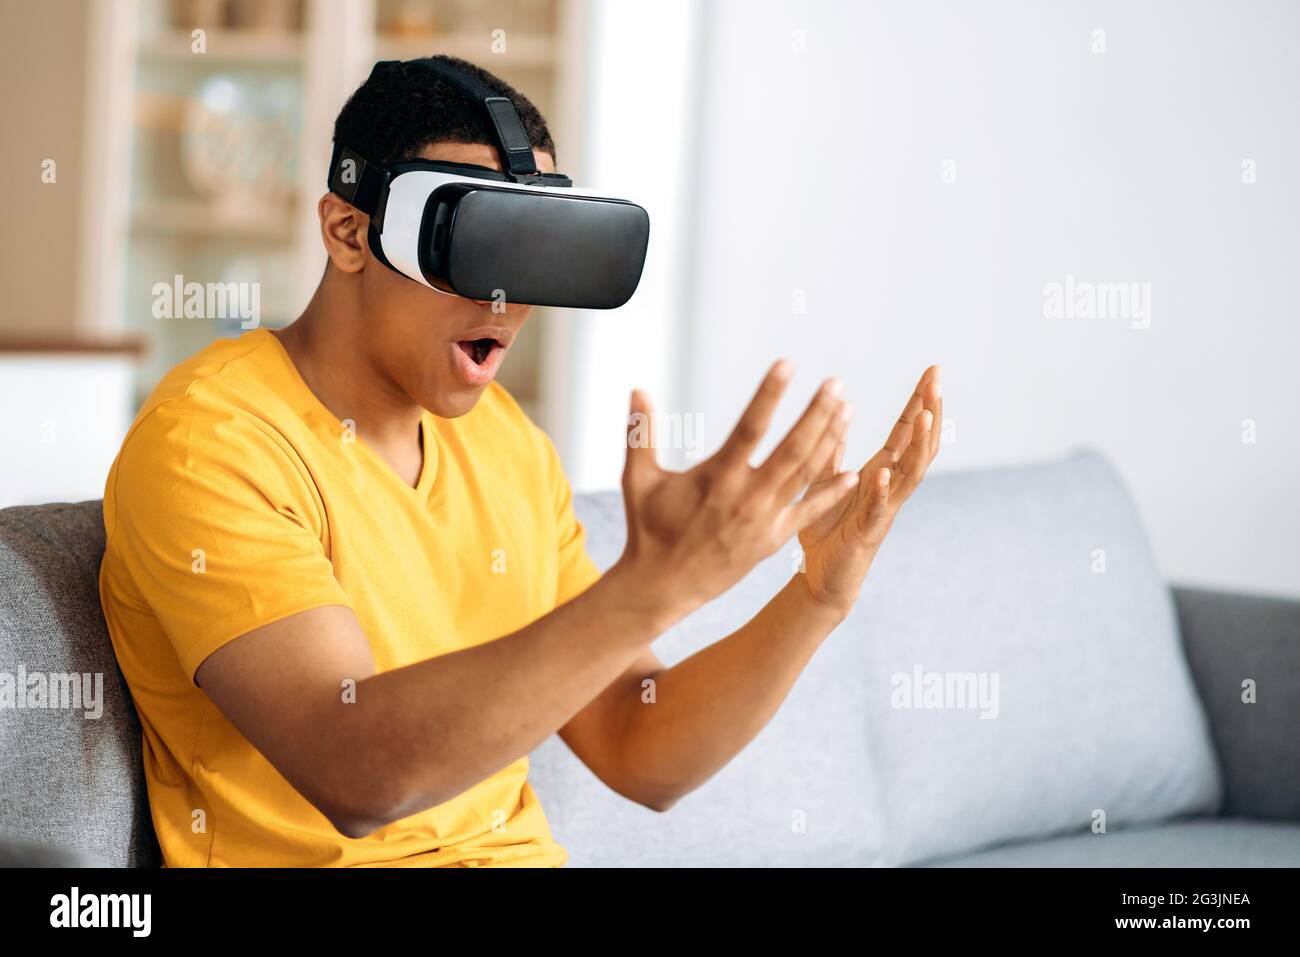 Un homme hispanique moderne qui teste des lunettes VR. Un jeune homme utilise des lunettes de réalité virtuelle, regarde excité à ses mains, des gestes avec les mains, assis à la maison sur le canapé dans le salon Banque D'Images